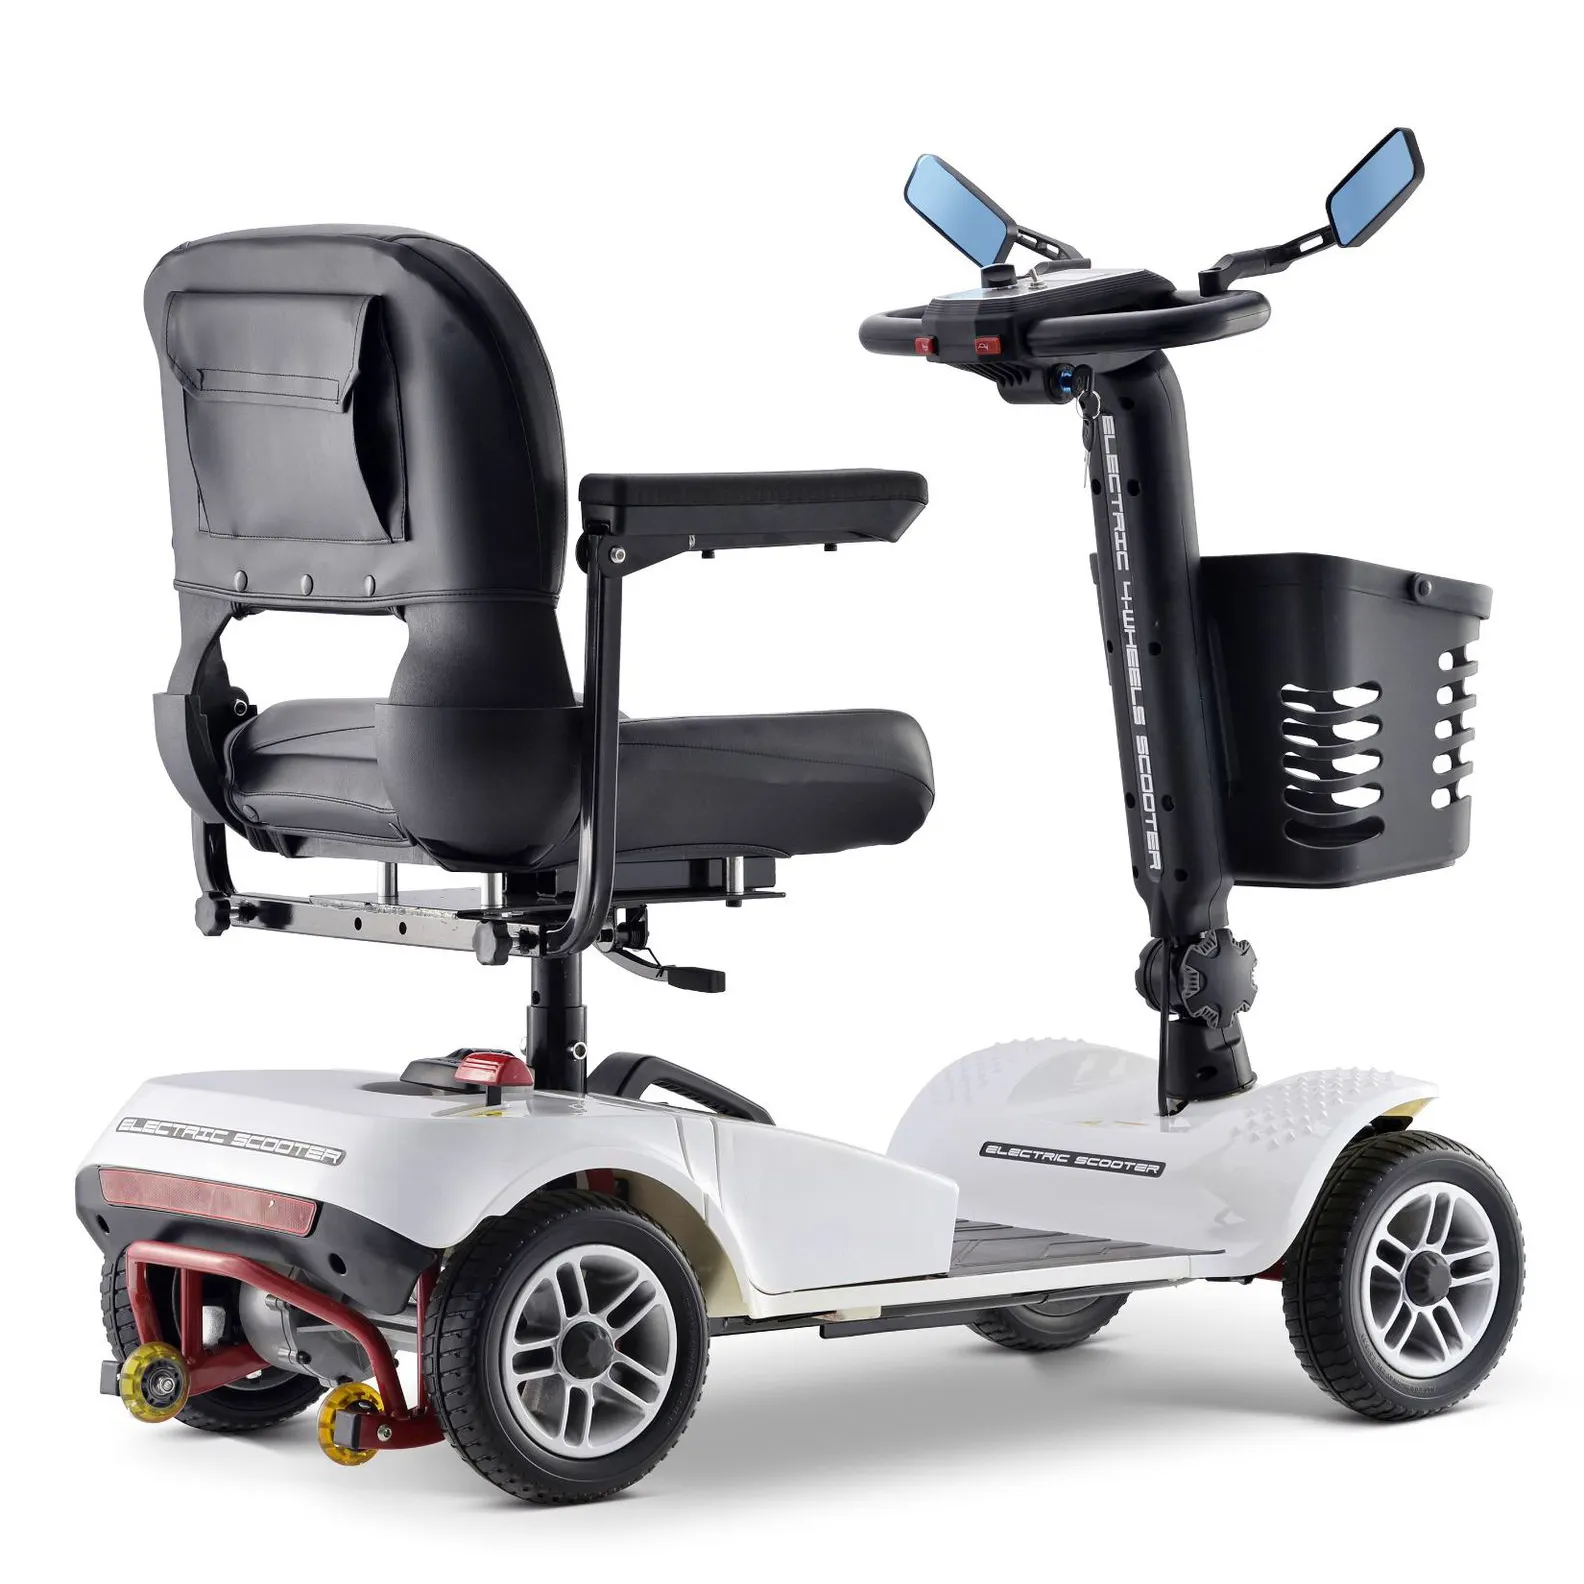 PILEYK scooter per disabili pesanti scooter per portatori di handicap guadabili scooter pieghevole leggero per disabili con cestino